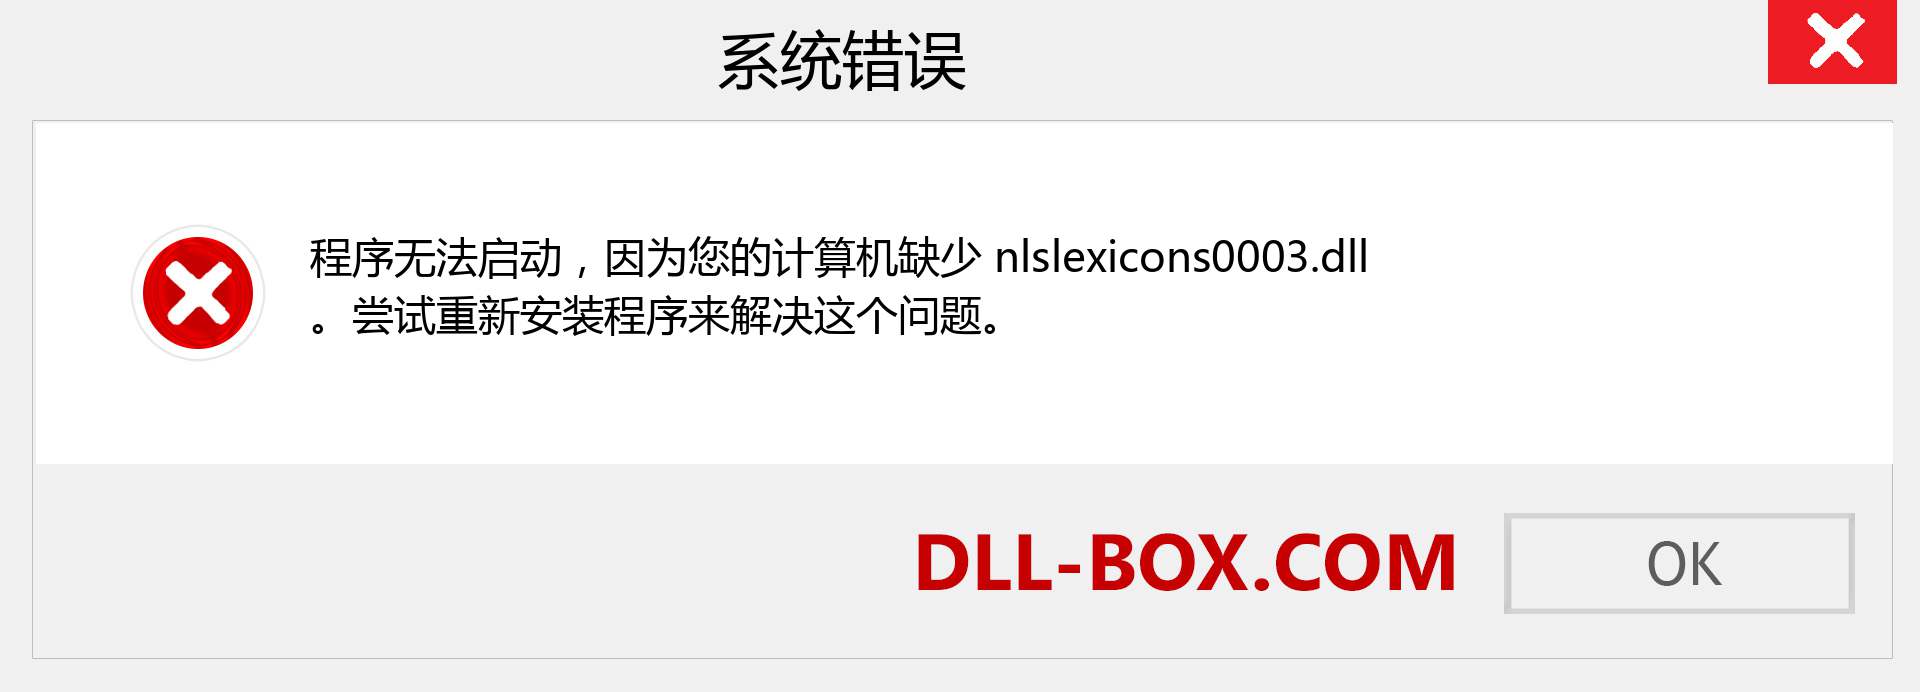 nlslexicons0003.dll 文件丢失？。 适用于 Windows 7、8、10 的下载 - 修复 Windows、照片、图像上的 nlslexicons0003 dll 丢失错误